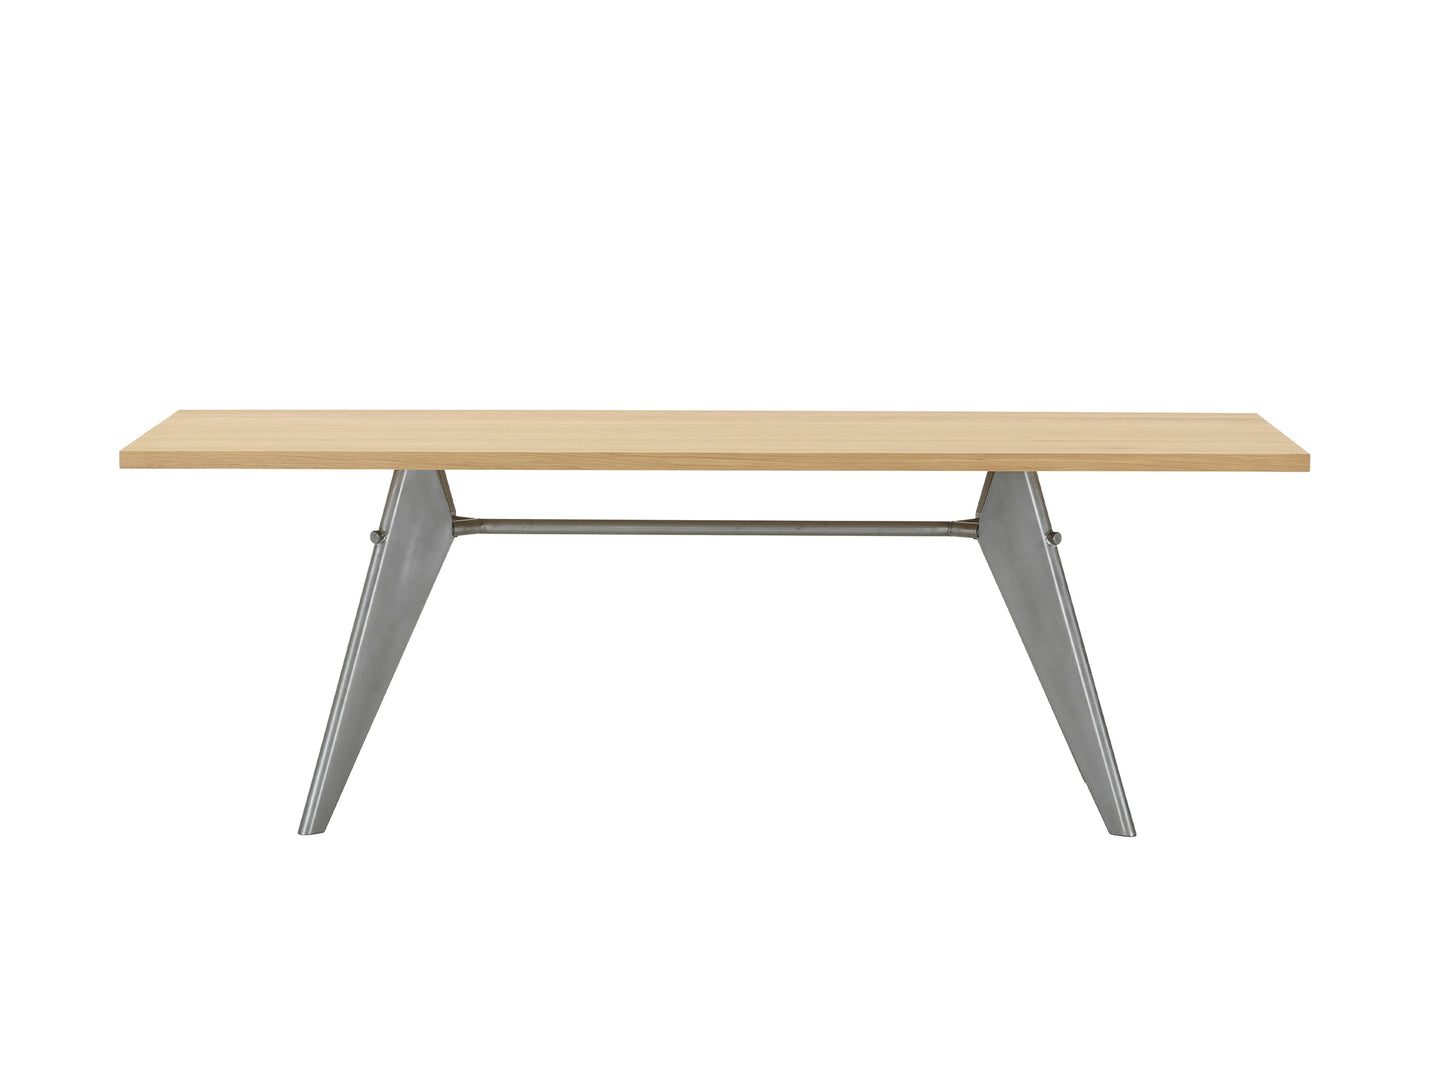 EM Table (Solid Oak Tabletop) by Vitra - Length 180 cm / Solid Oak Tabletop / Metal brut Base